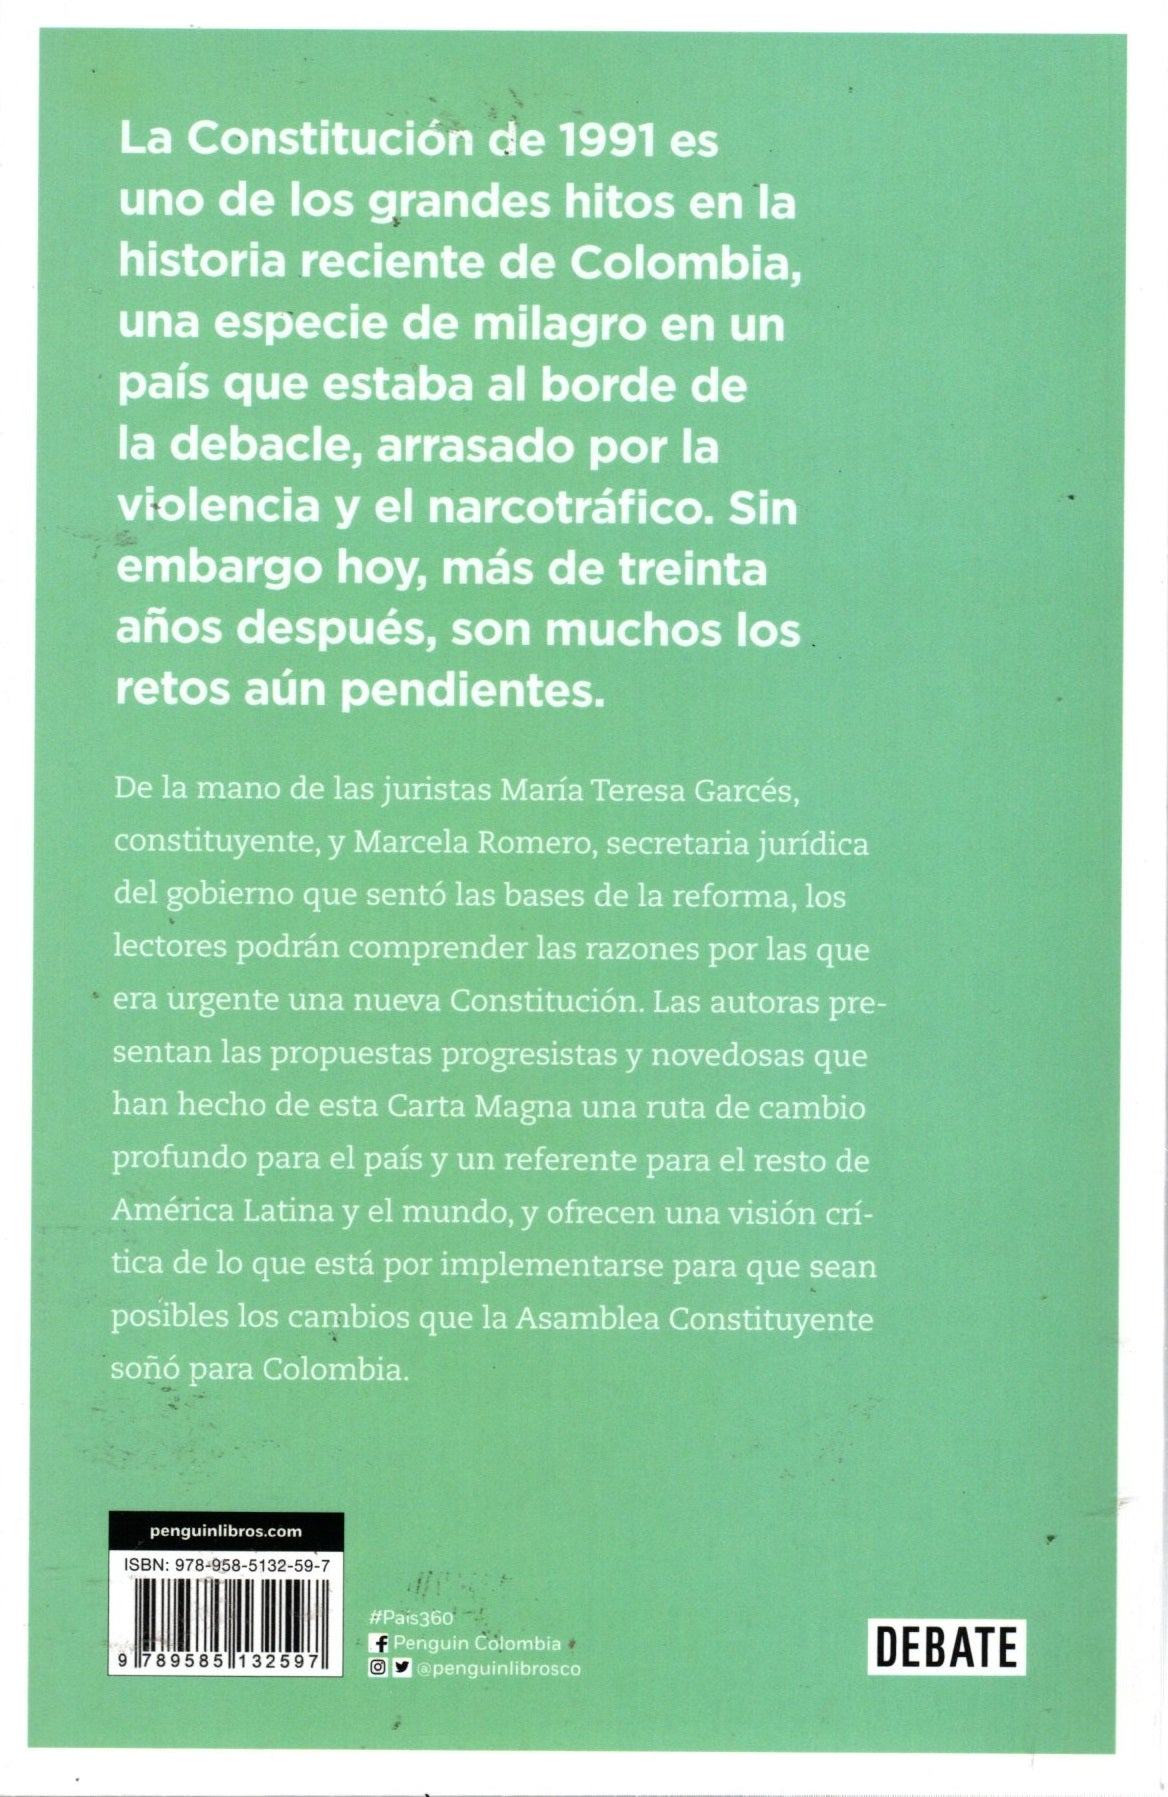 Libro María Teresa Garcés /Marcela Romero - Suma de ideales para Colombia